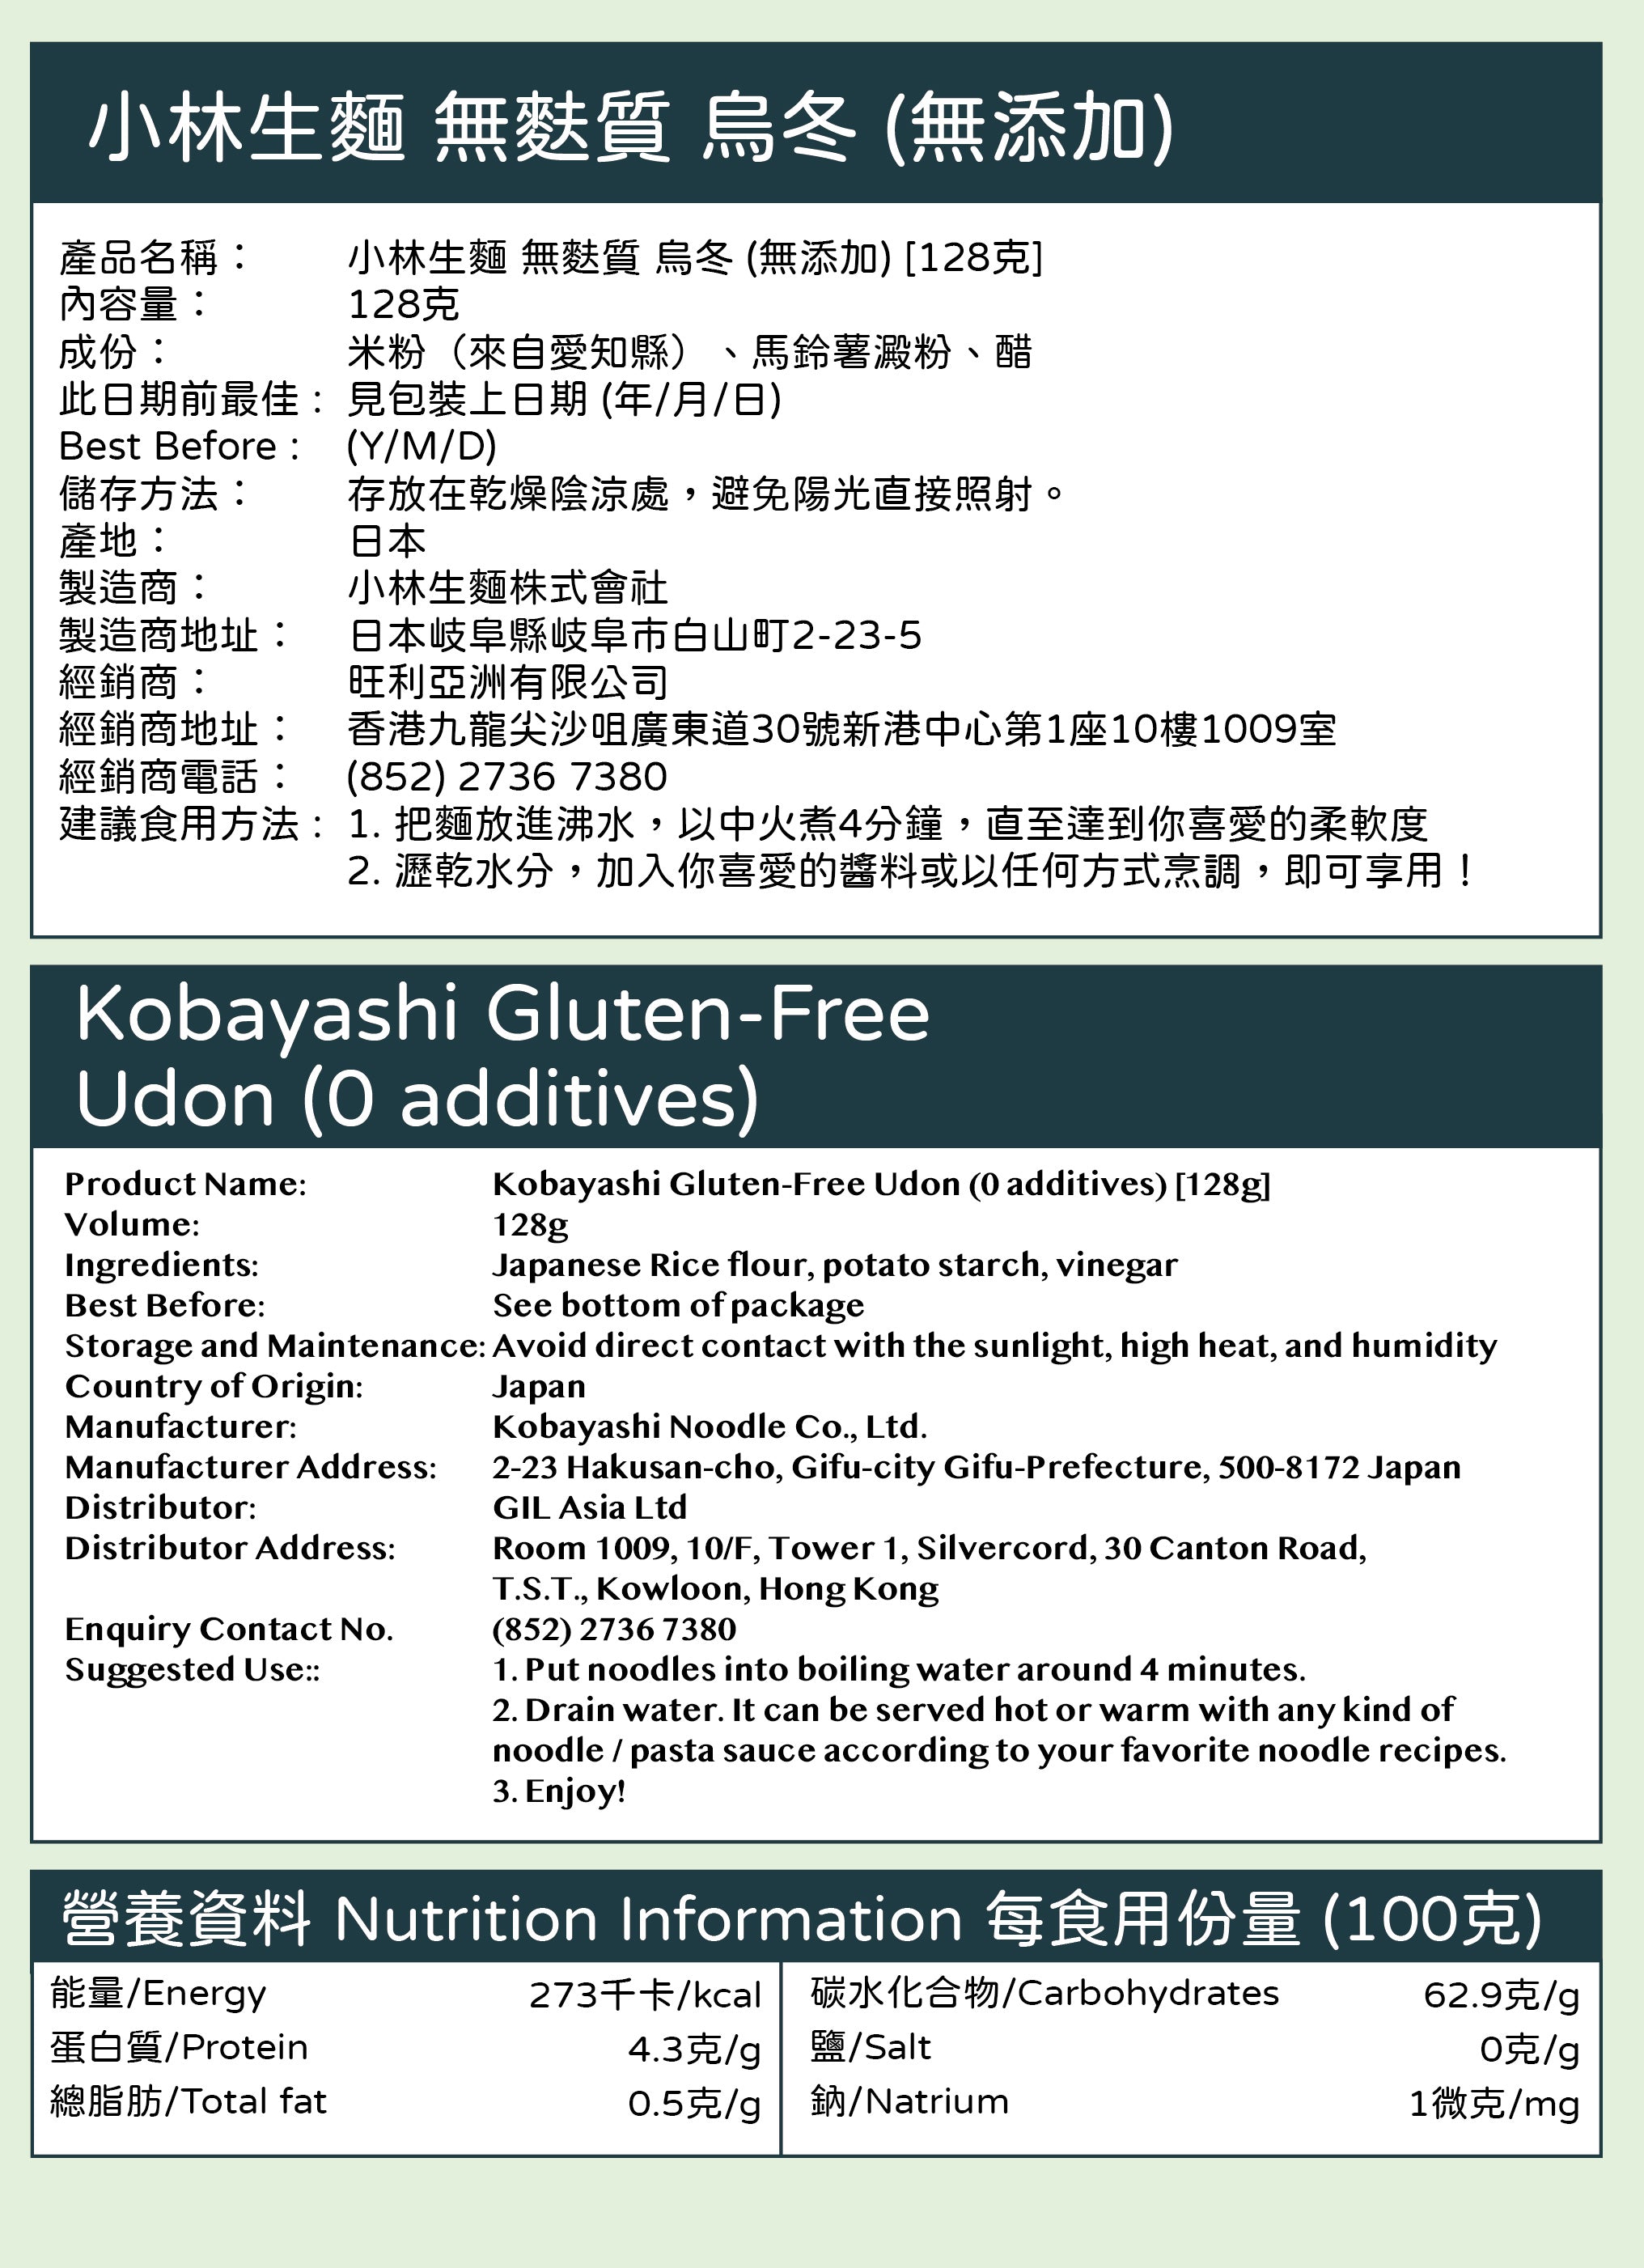 Kobayashi Gluten-Free Udon (0 additives) [128g]